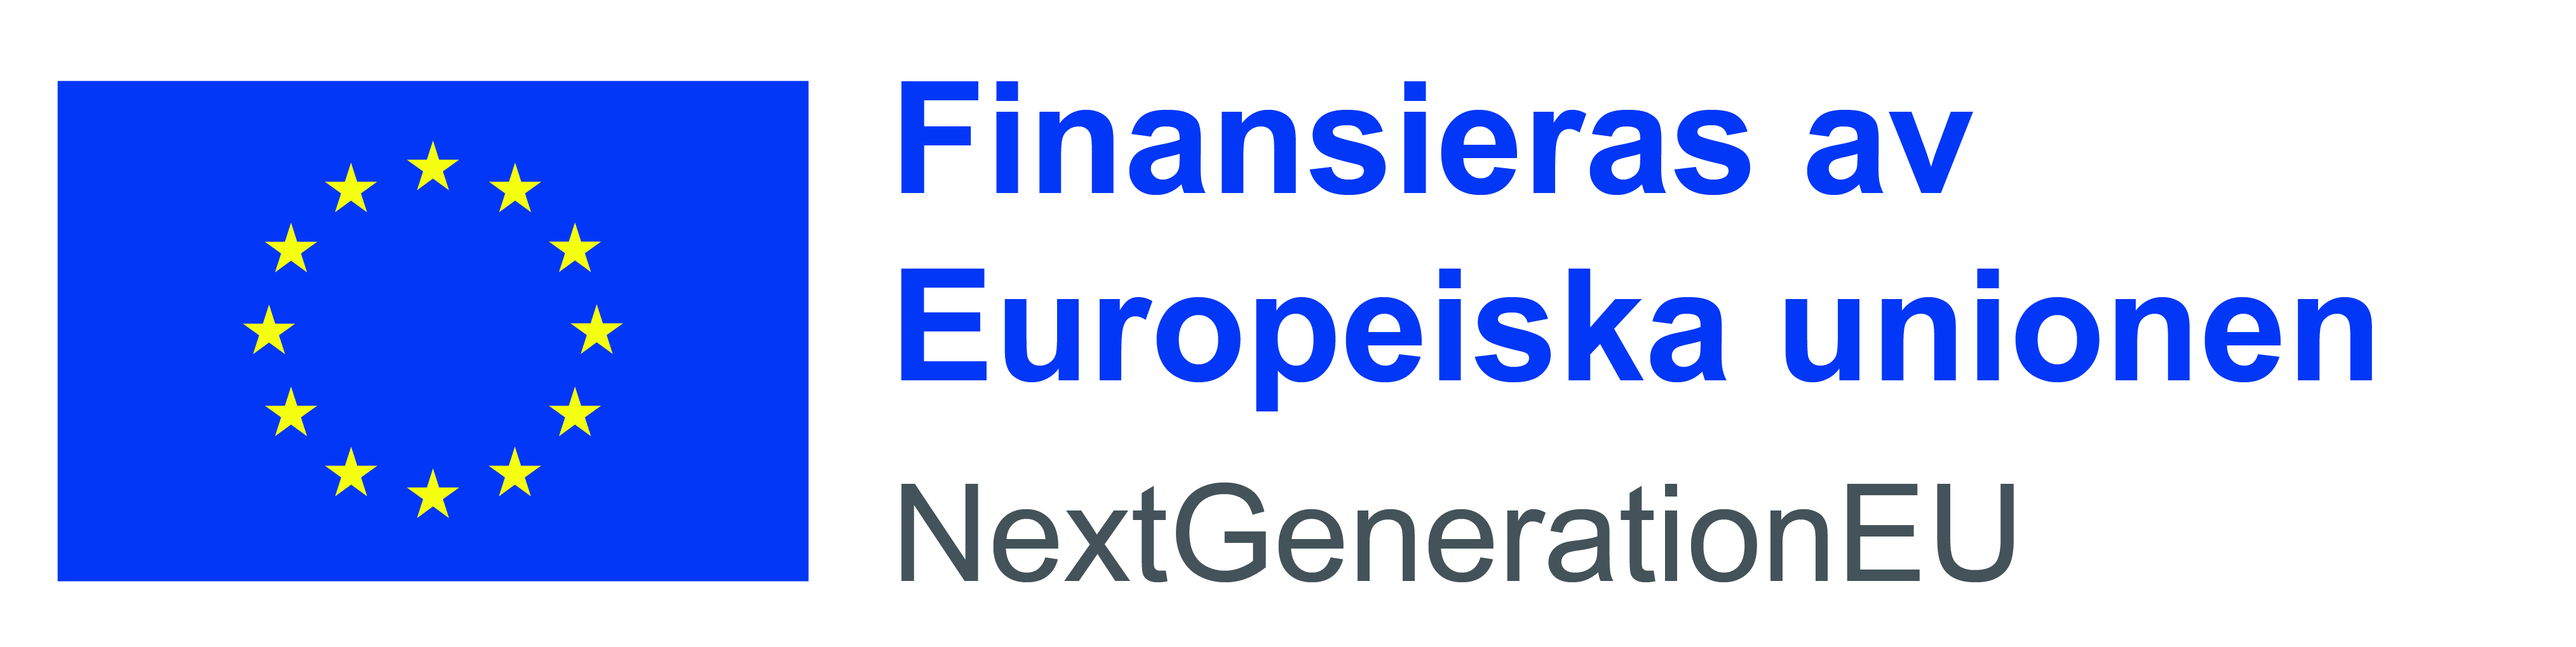 Finansieras av Europeiska unionen NextGenerationEU